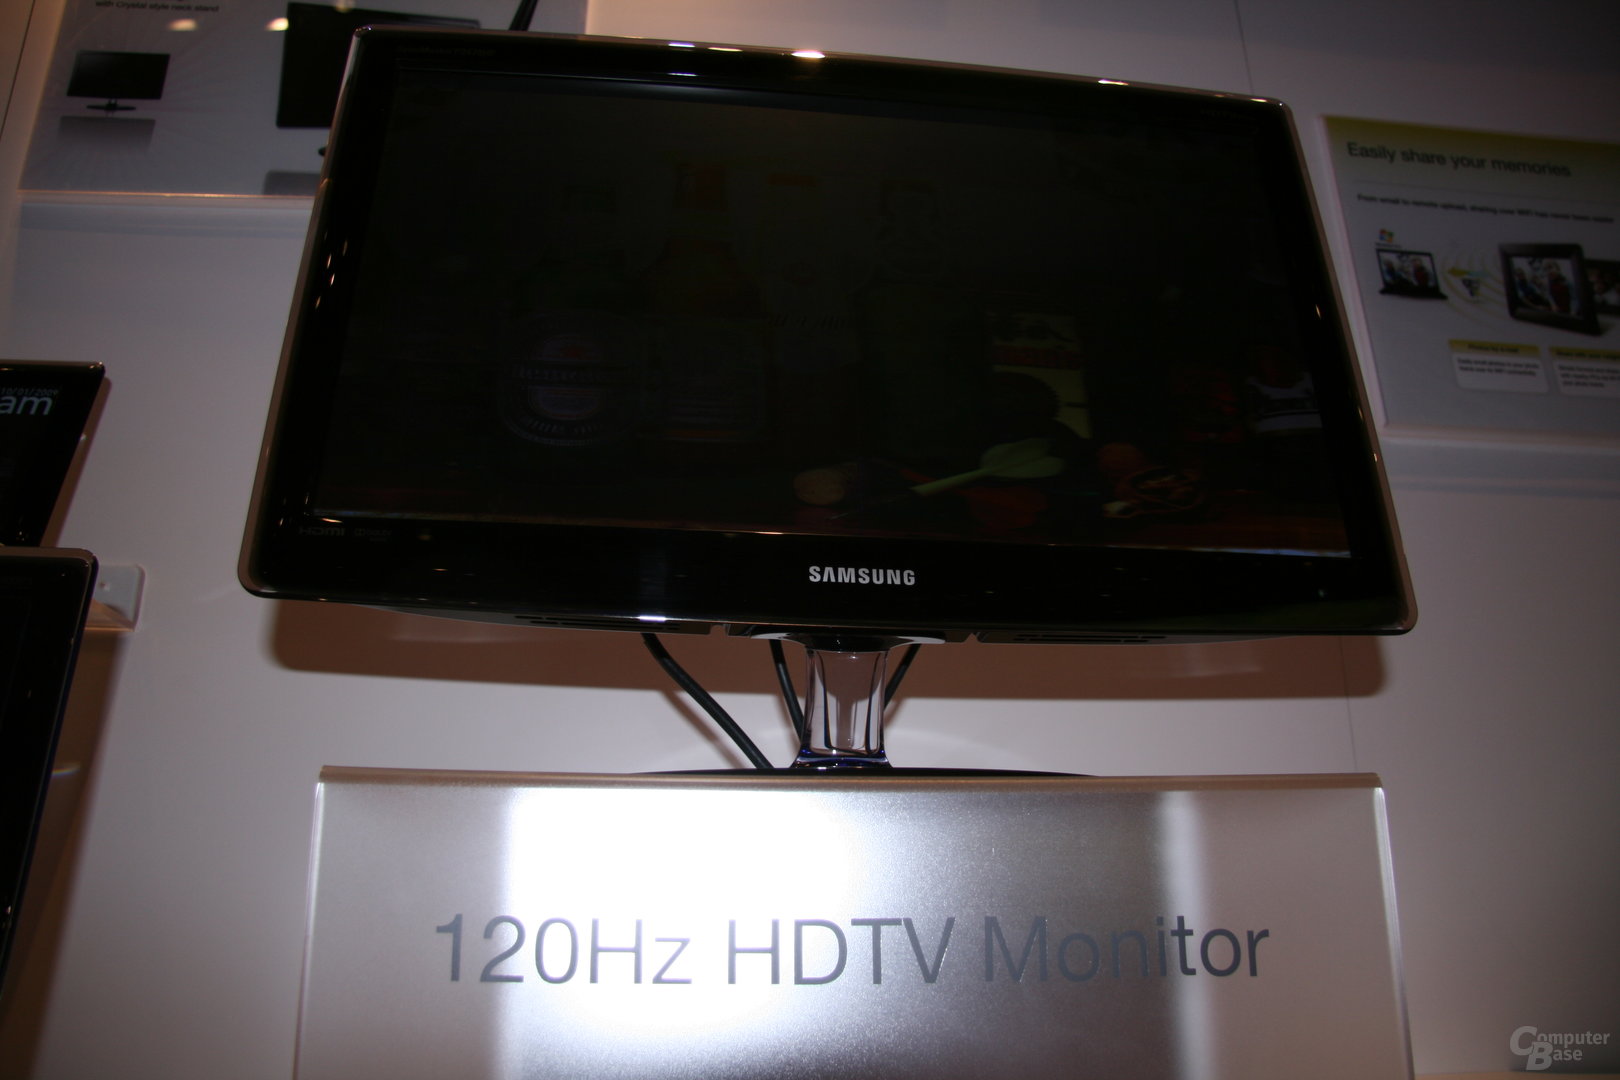 Monitore und Fernseher mit 120 Hz von Samsung